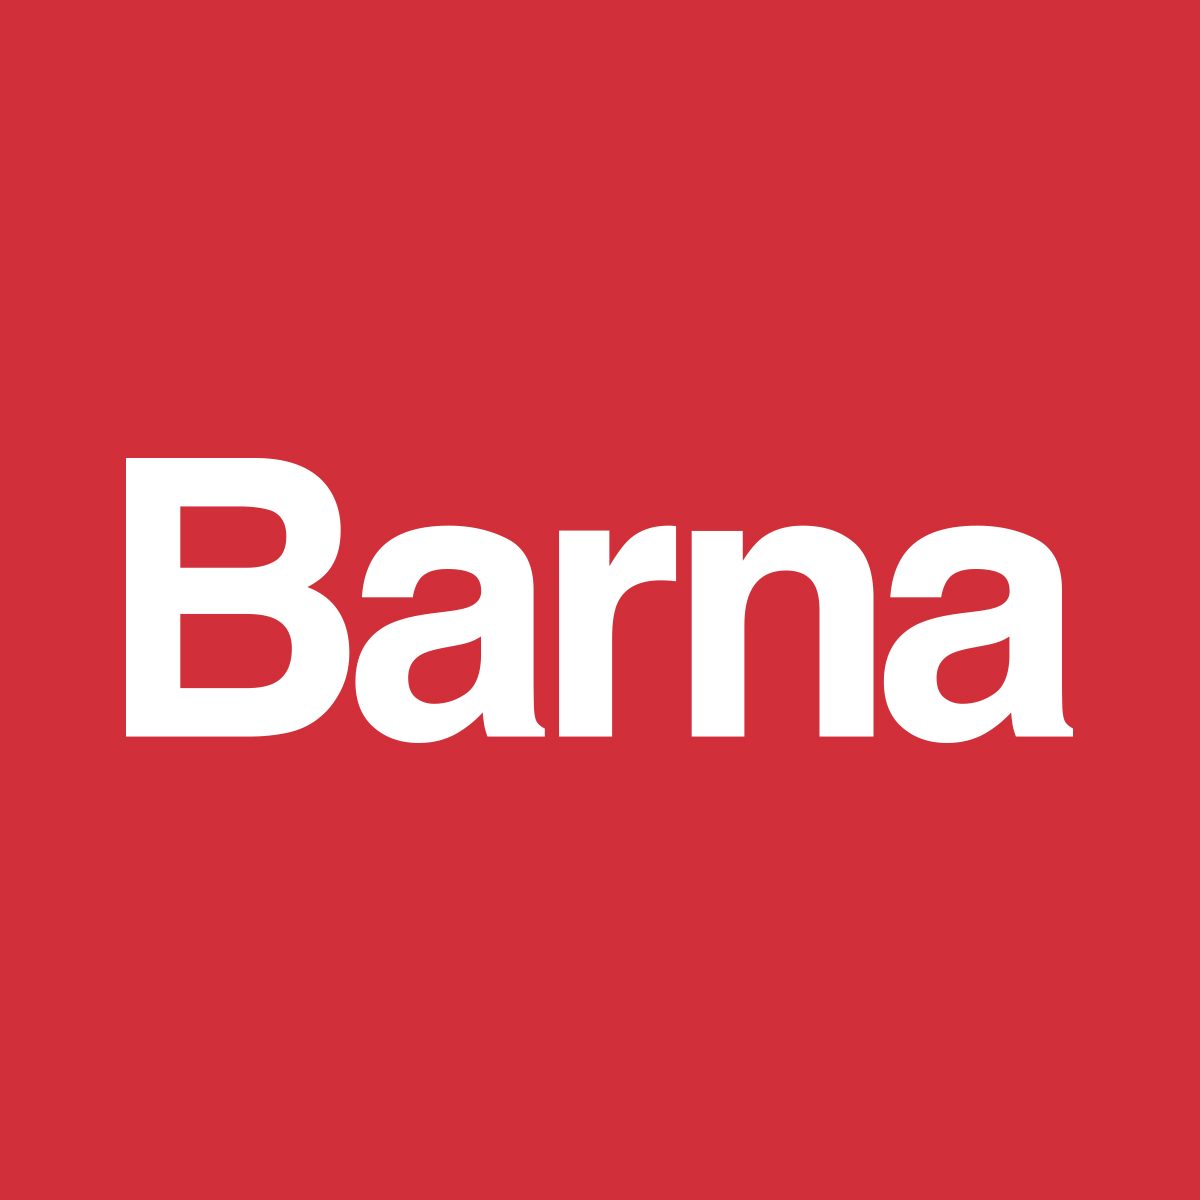 Barna logo